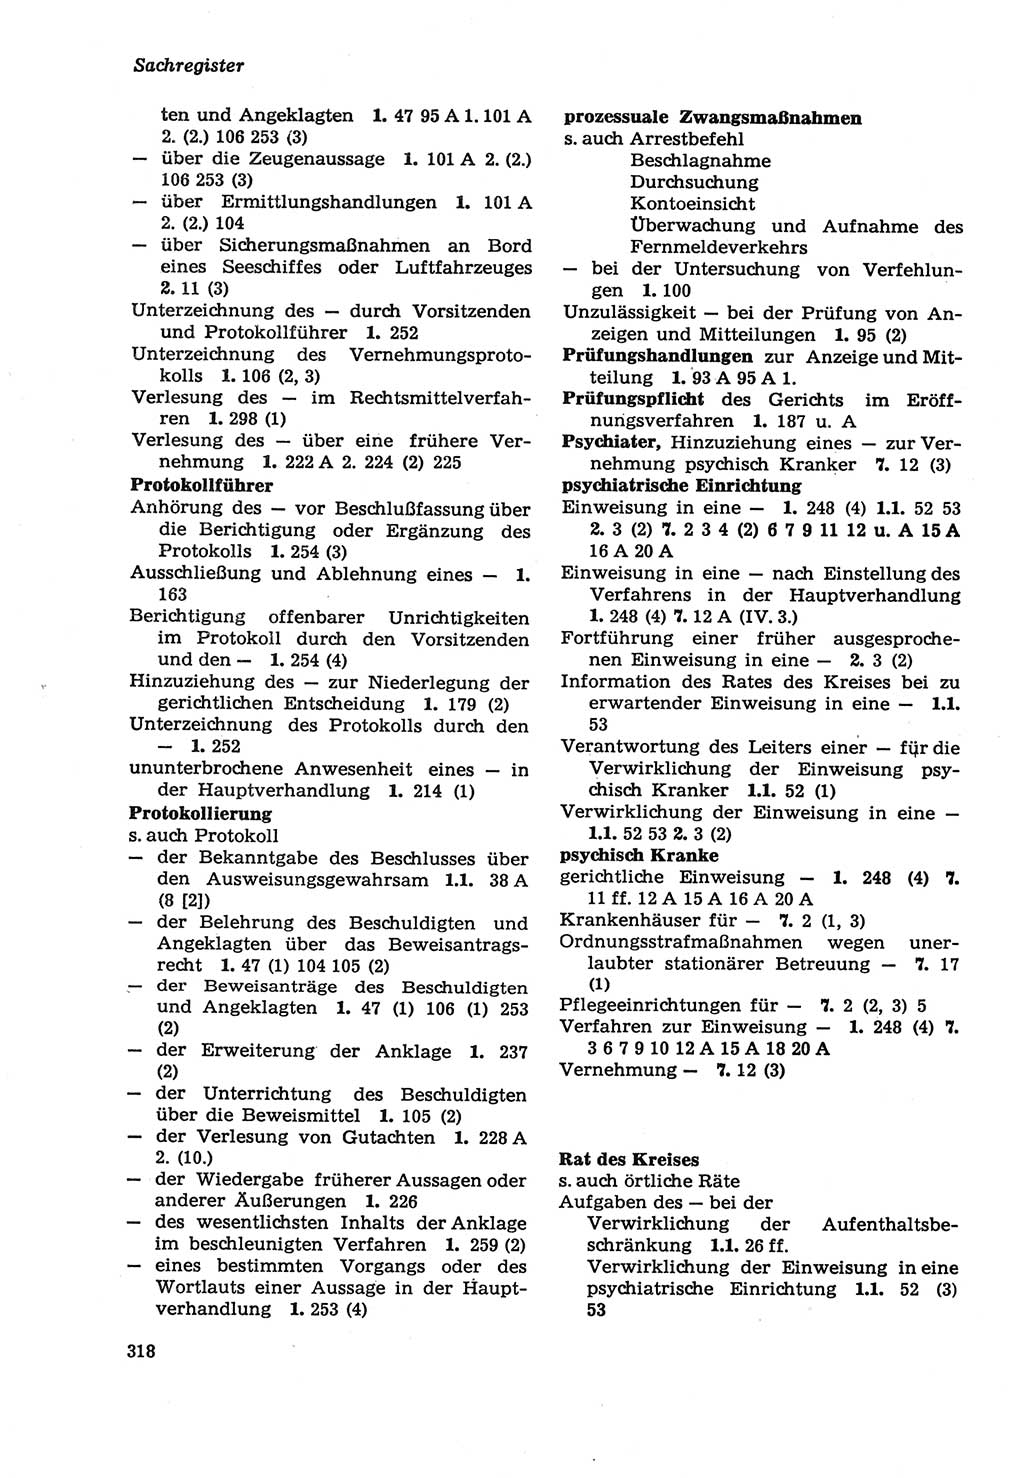 Strafprozeßordnung (StPO) der Deutschen Demokratischen Republik (DDR) sowie angrenzende Gesetze und Bestimmungen 1979, Seite 318 (StPO DDR Ges. Best. 1979, S. 318)